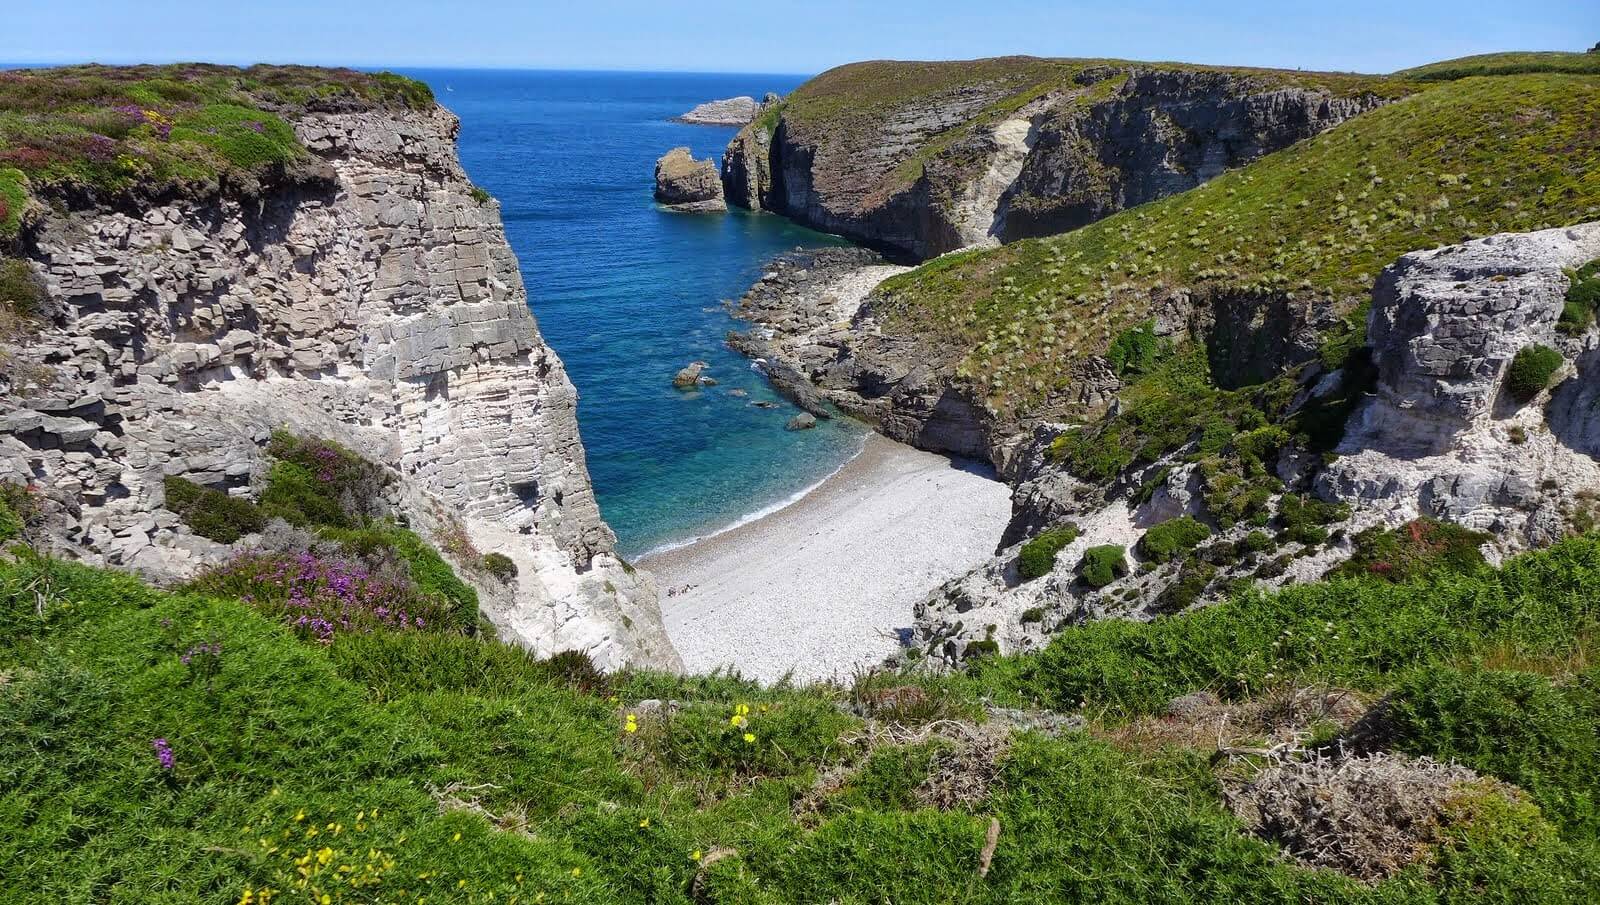 Entre terre et mer, la beauté sans pareil du Cap d'Erquy ©Grand site cap d'Erquy cap Fréhel côtes-d'armor